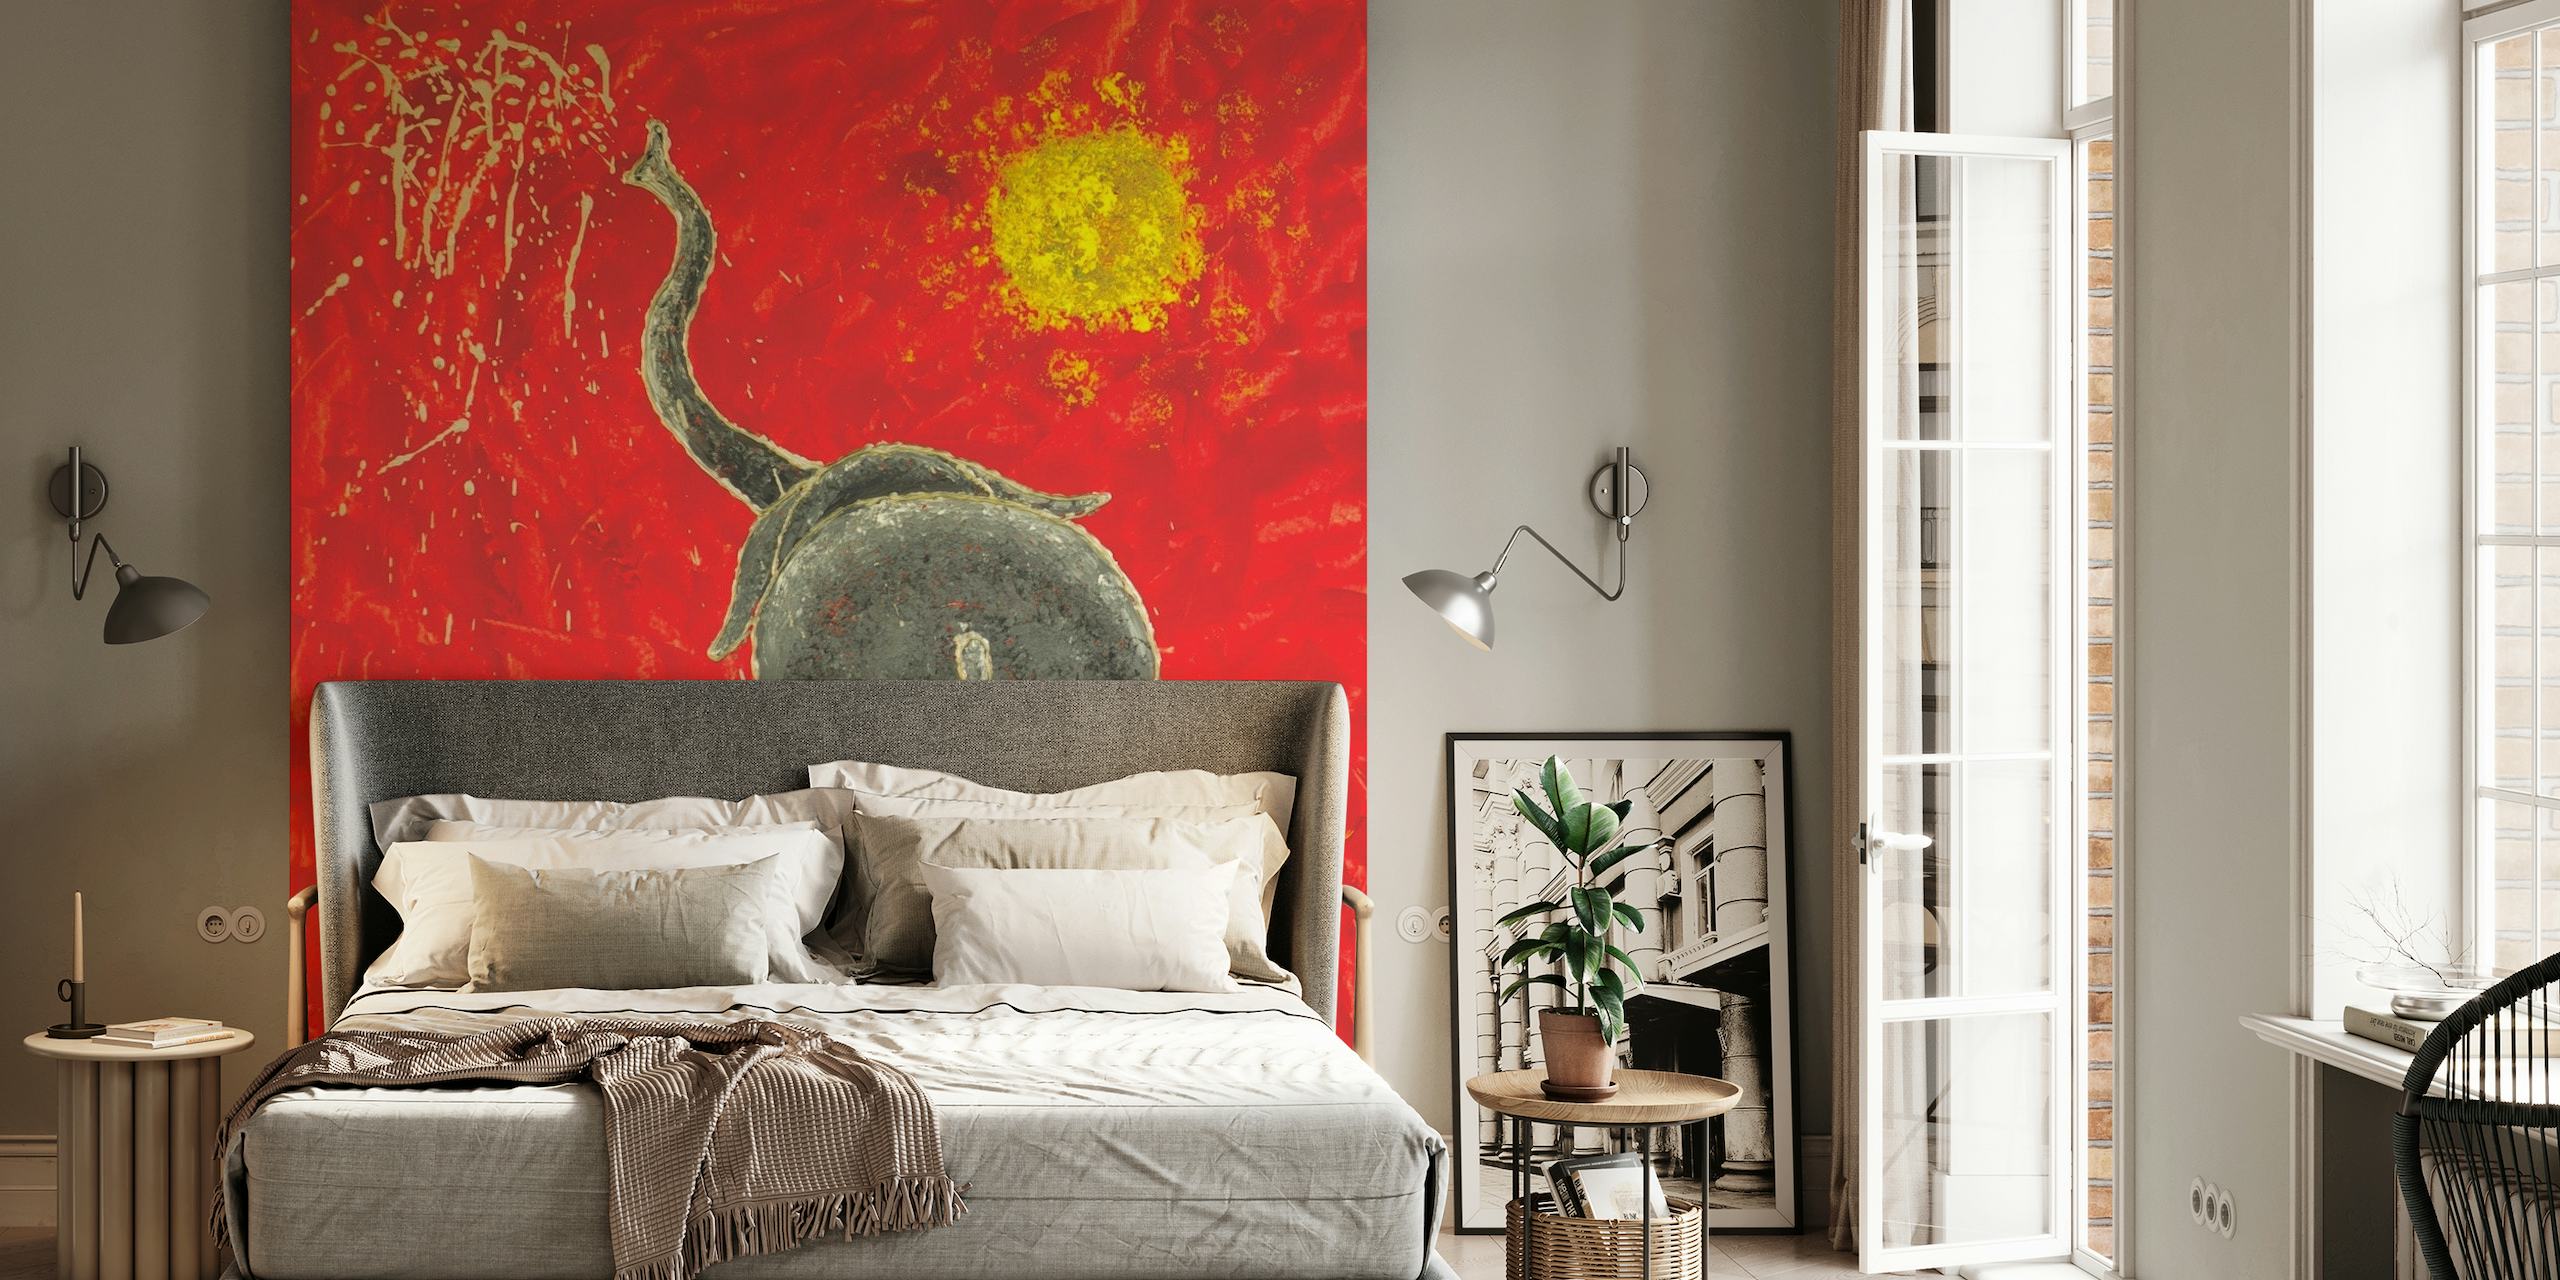 Kunstnerisk vægmaleri af en legende elefant i abstrakt stil med rød baggrund og gul sol